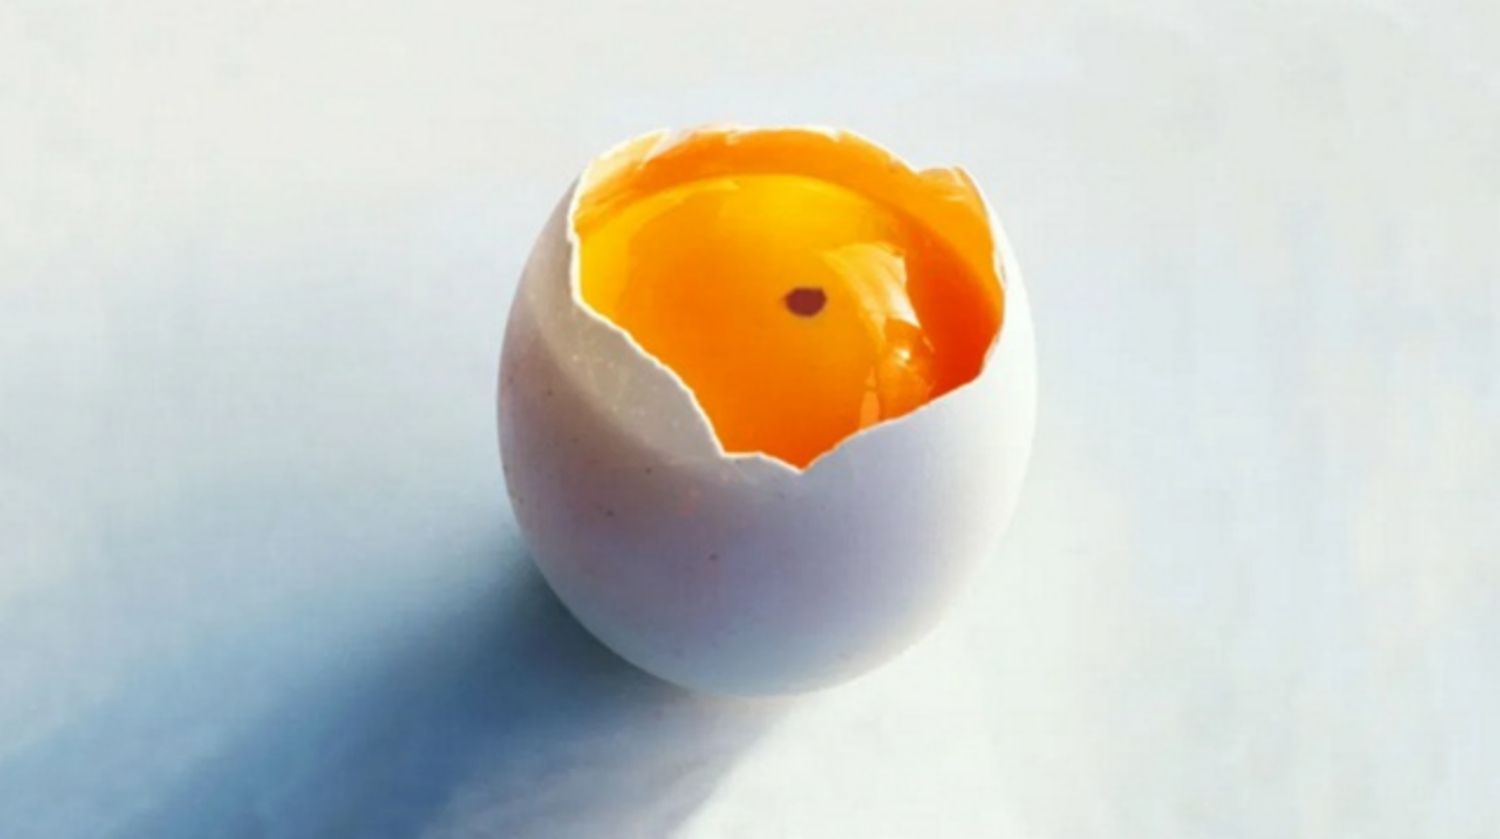 Trứng có dính đốm đỏ có ăn được không?